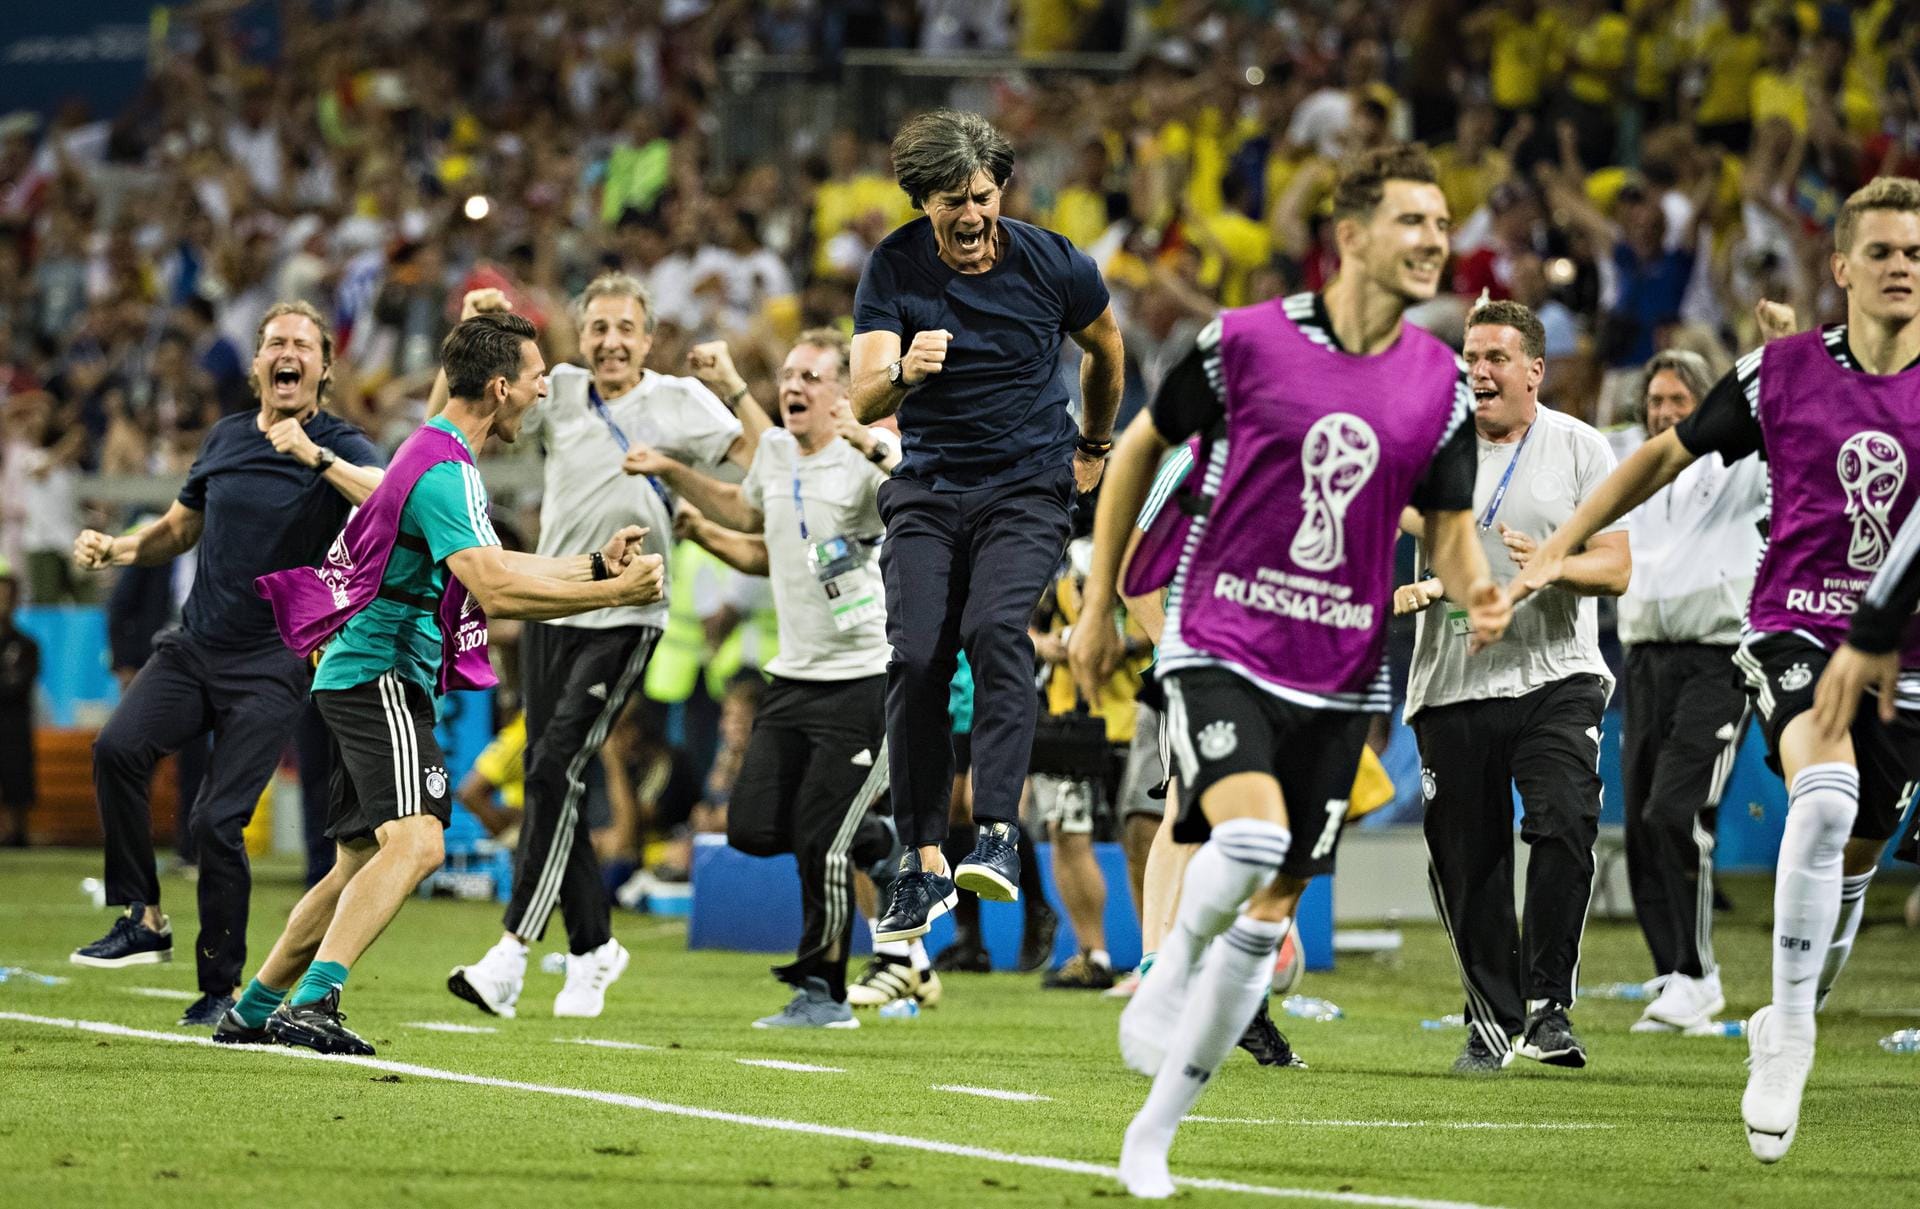 23. Juni 2018: Der in positiver Hinsicht emotionalste Moment bei der WM 2018 ist der Last-Minute-Freistoß-Treffer von Toni Kroos im zweiten Gruppenspiel gegen Schweden, der den 2:1-Sieg sichert. Doch die größte Enttäuschung folgt nur vier Tage später.